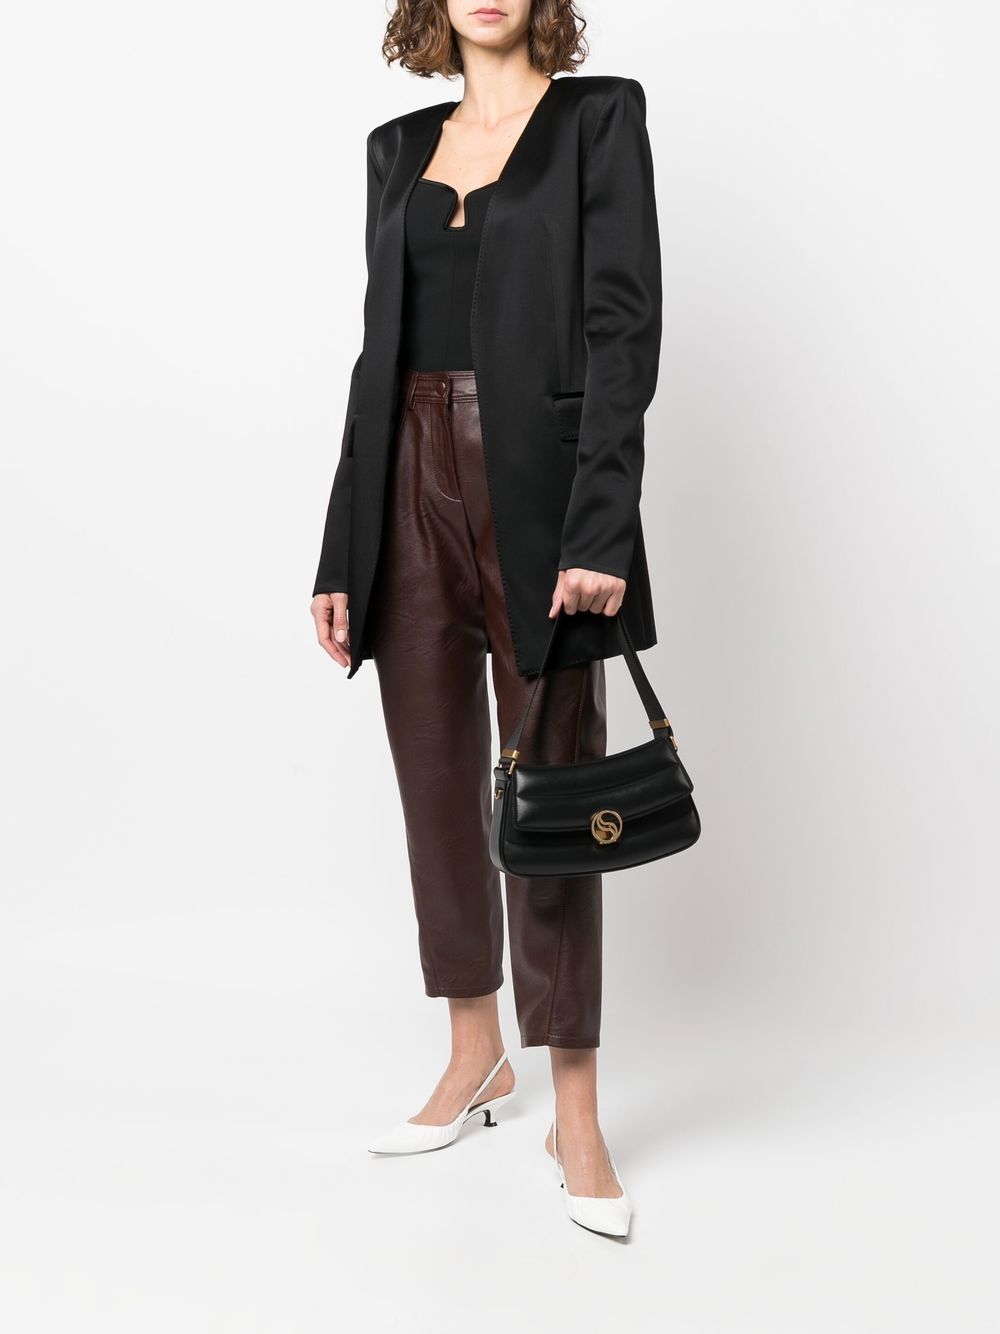 S Wave Quilted Shoulder Bag in Black - Stella Mc Cartney